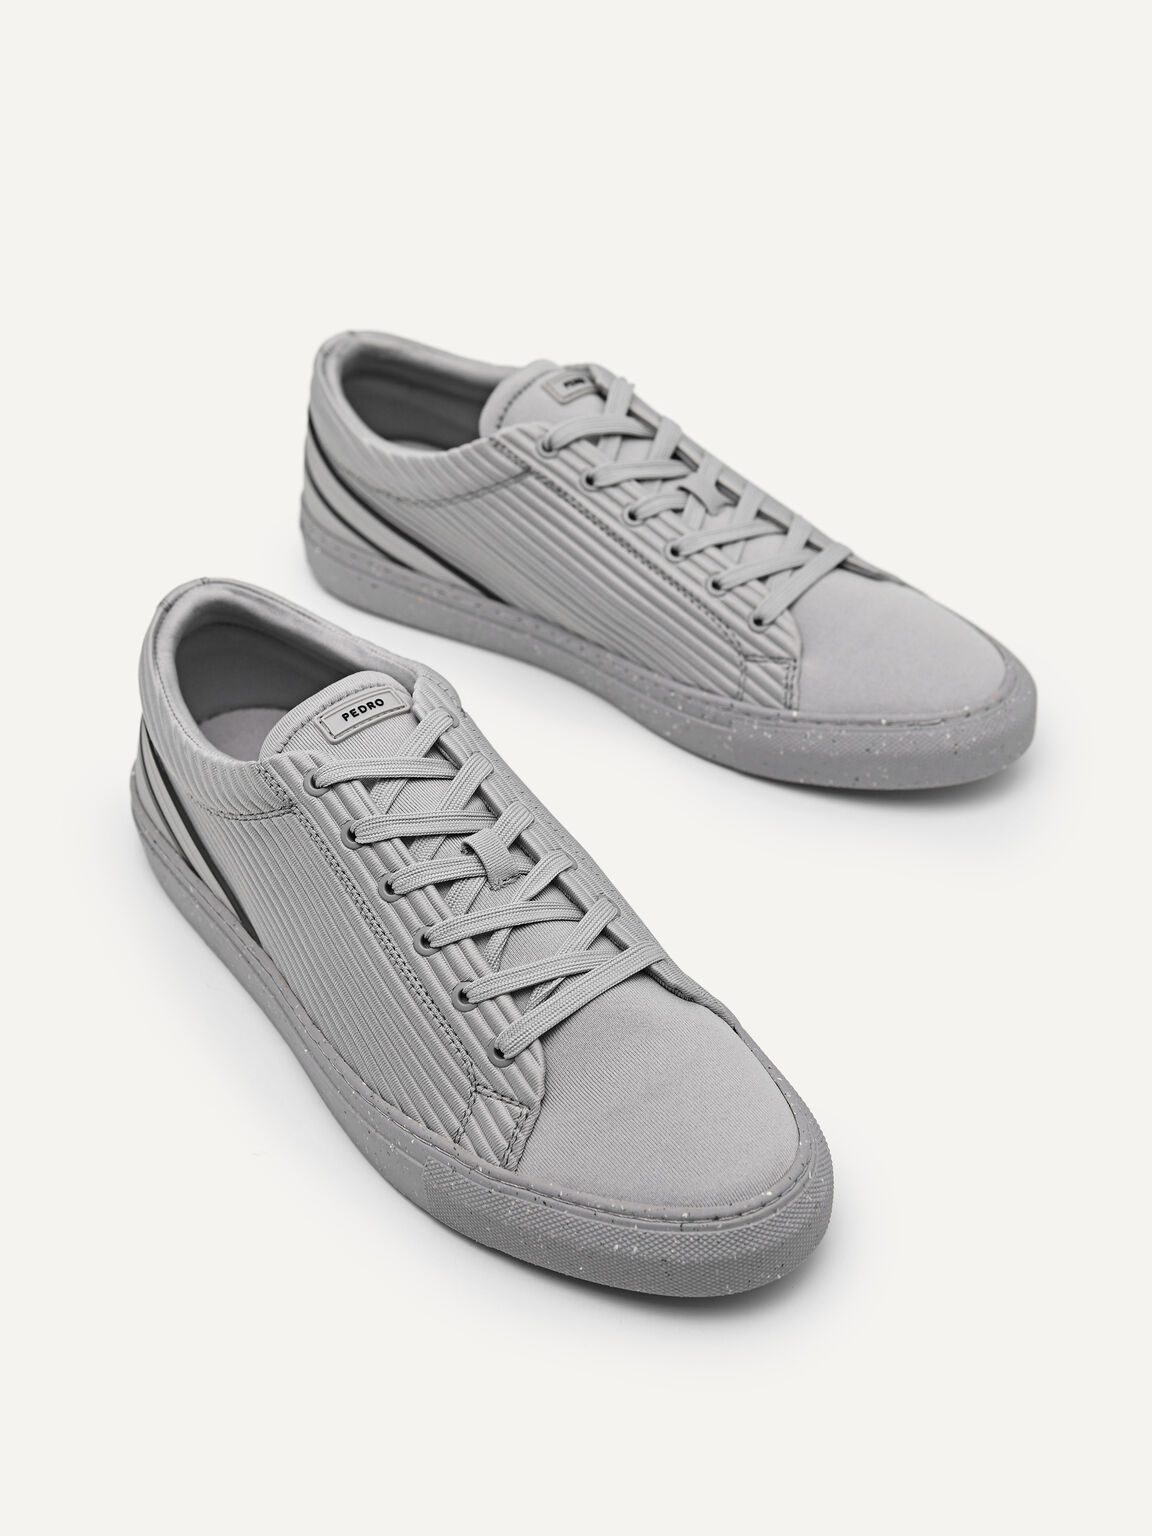 rePEDRO褶皺運動鞋, 灰色, hi-res